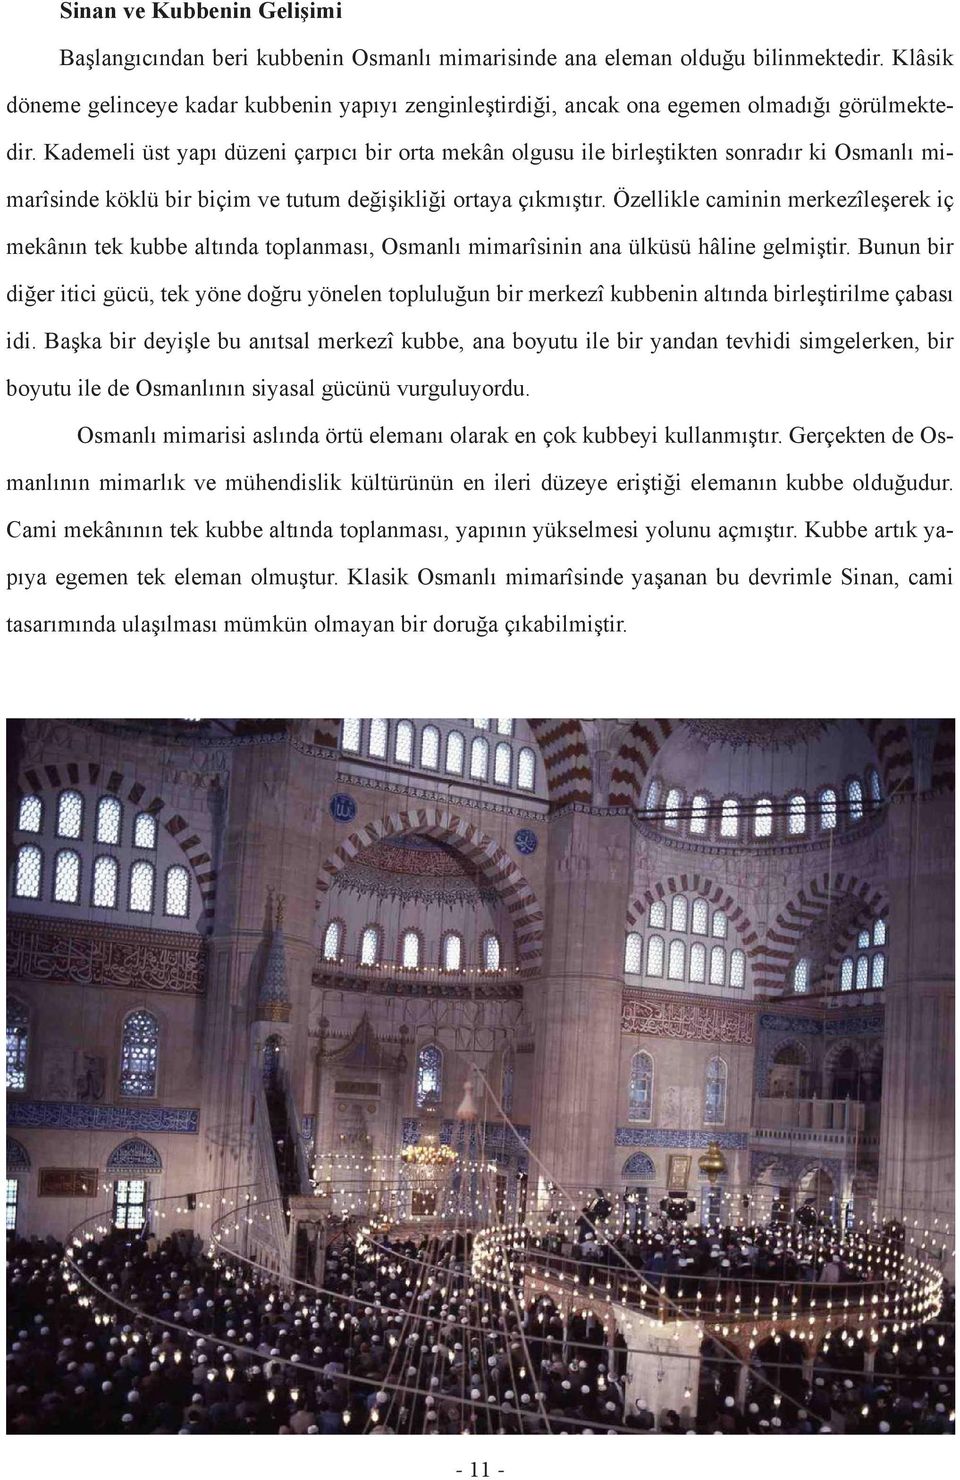 Kademeli üst yapı düzeni çarpıcı bir orta mekân olgusu ile birleştikten sonradır ki Osmanlı mimarîsinde köklü bir biçim ve tutum değişikliği ortaya çıkmıştır.